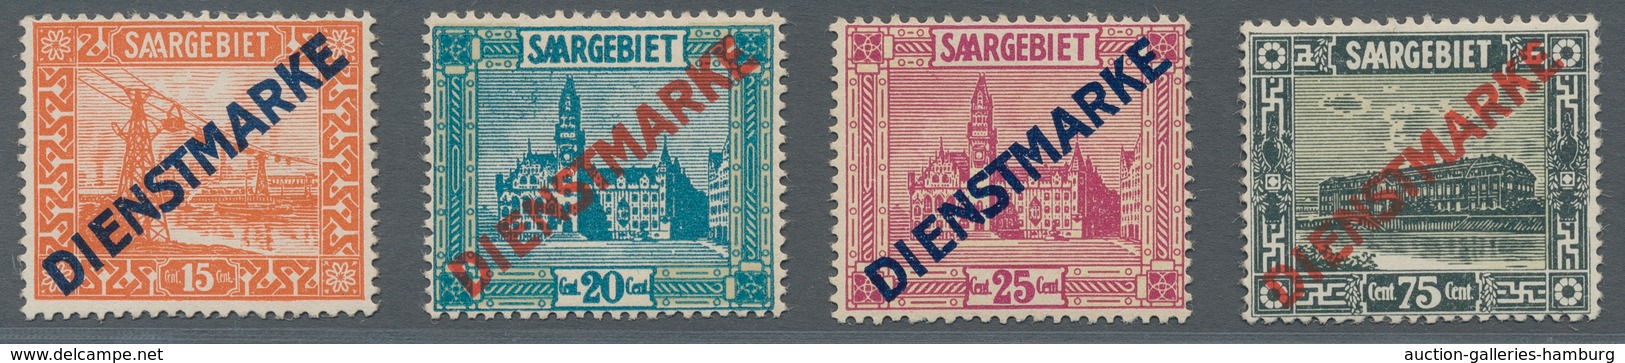 Deutsche Abstimmungsgebiete: Saargebiet - Dienstmarken: 1922-1929, Dienst 11 I Und II Sind Dabei, üb - Oficiales